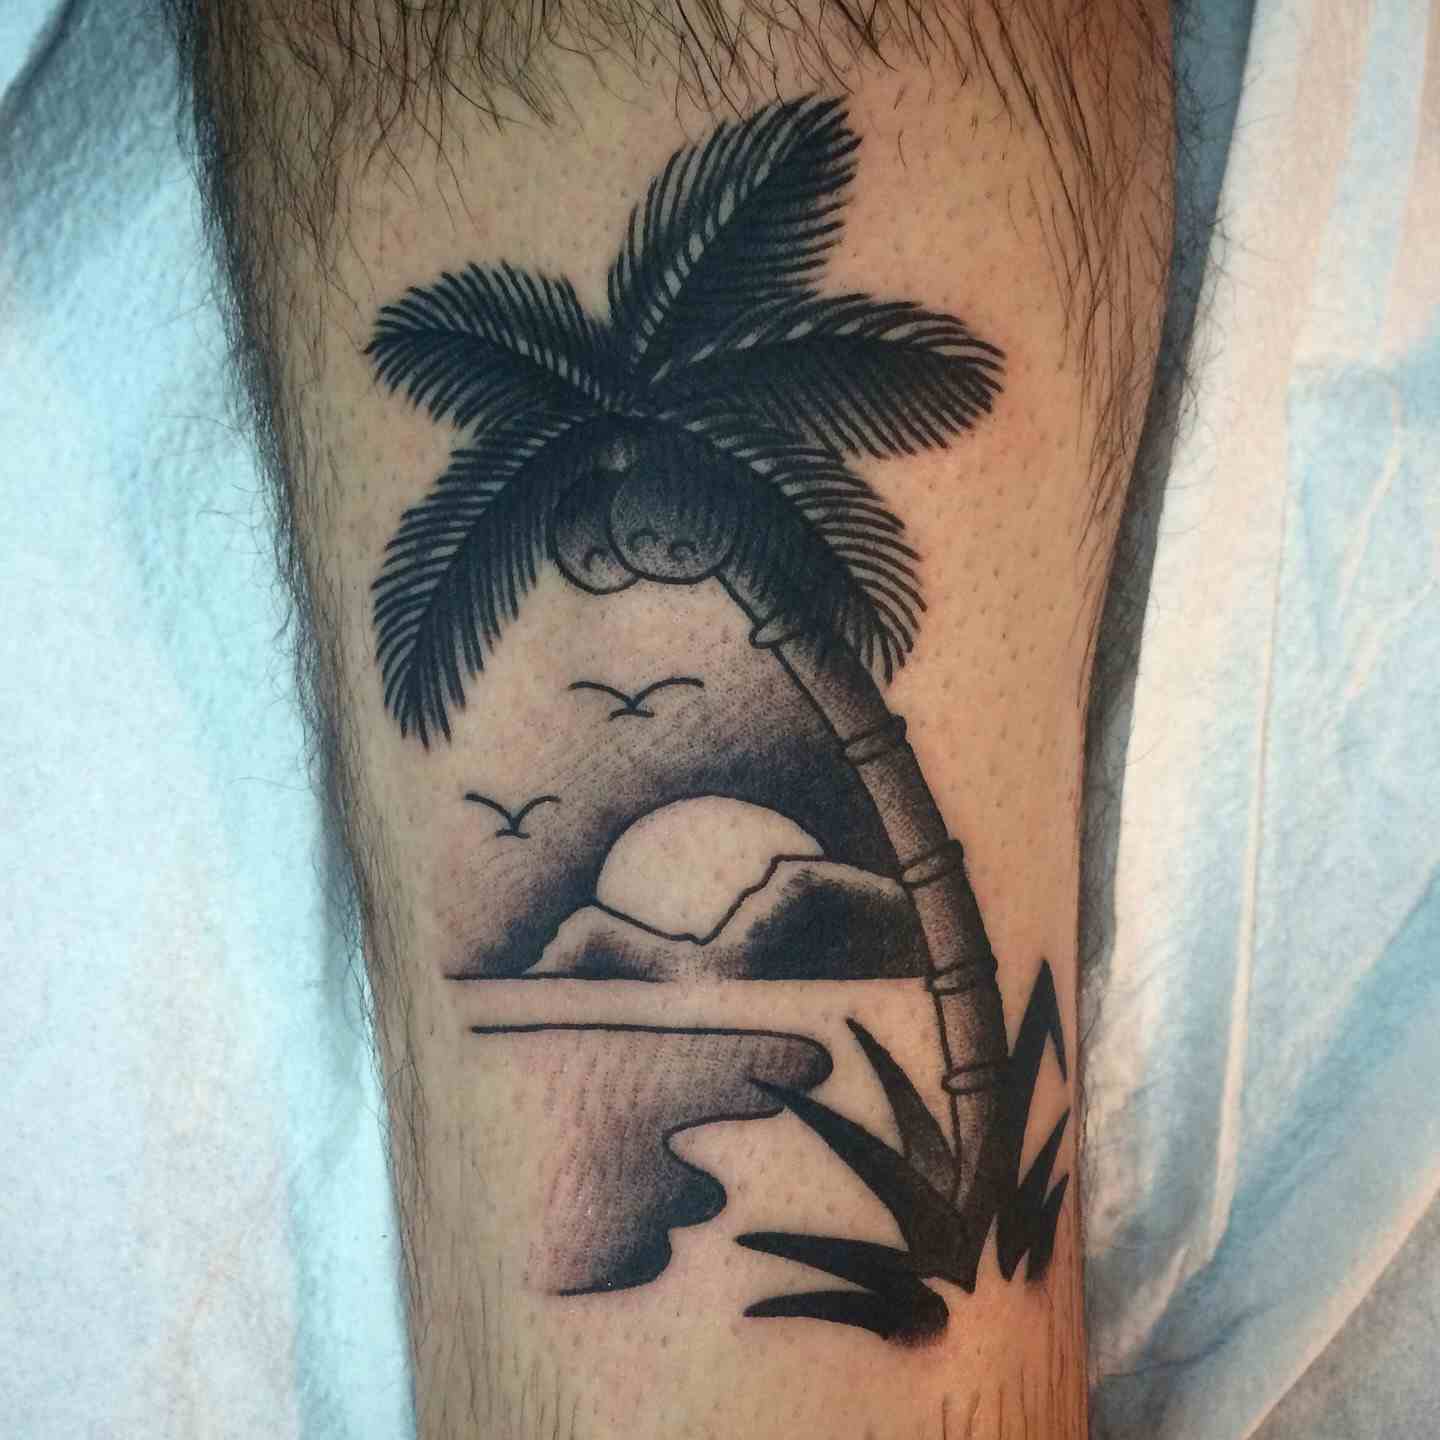 Palm tree island tattoo